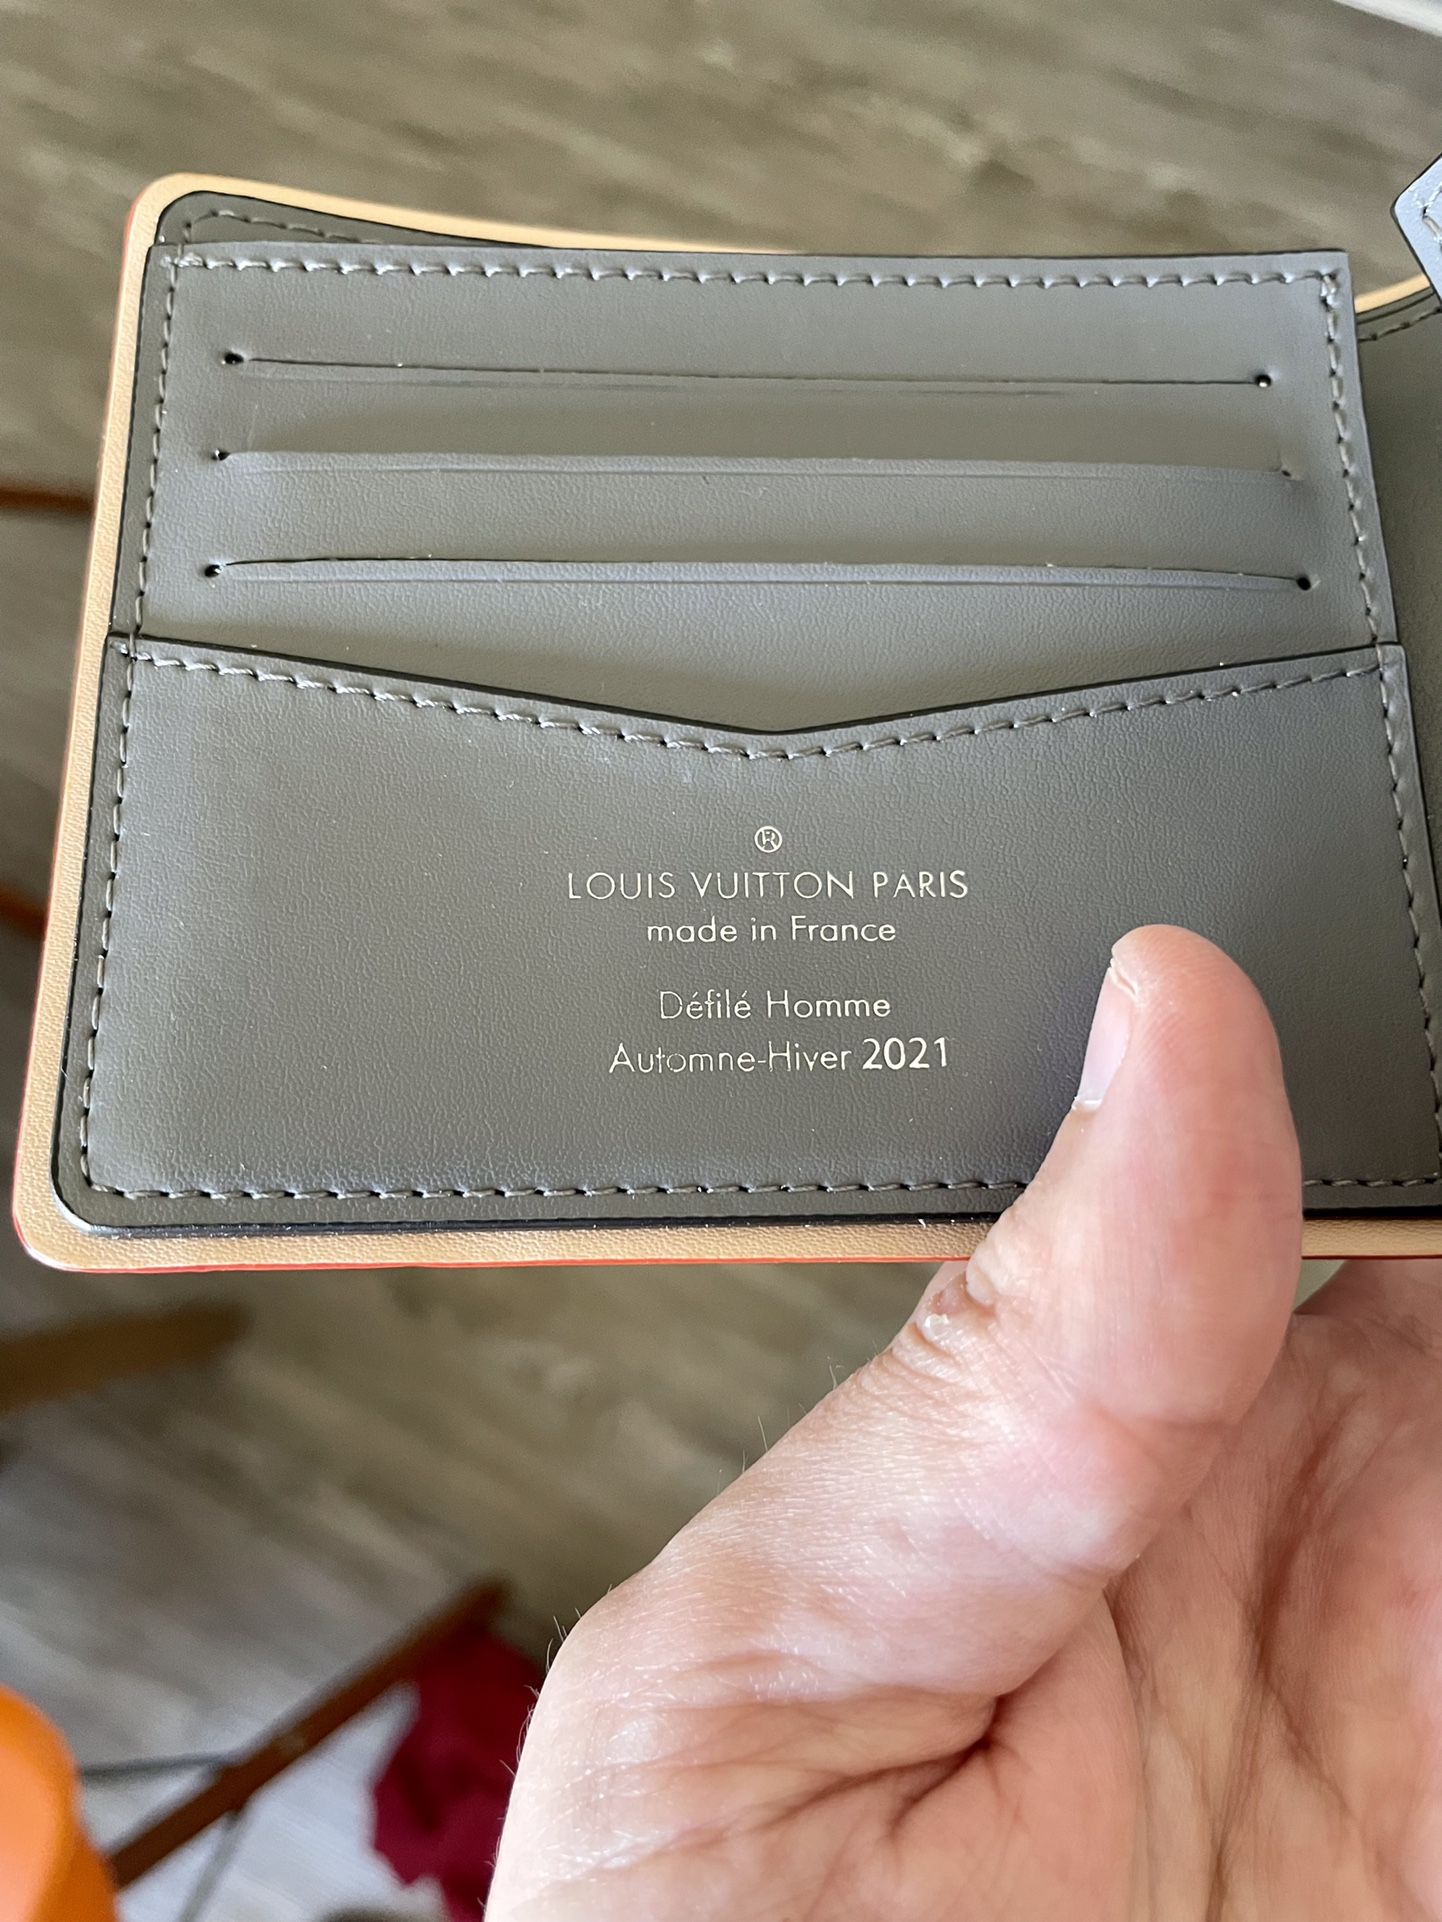 Louis Vuitton Twist Lock Wallet for Sale in Glendale, AZ - OfferUp